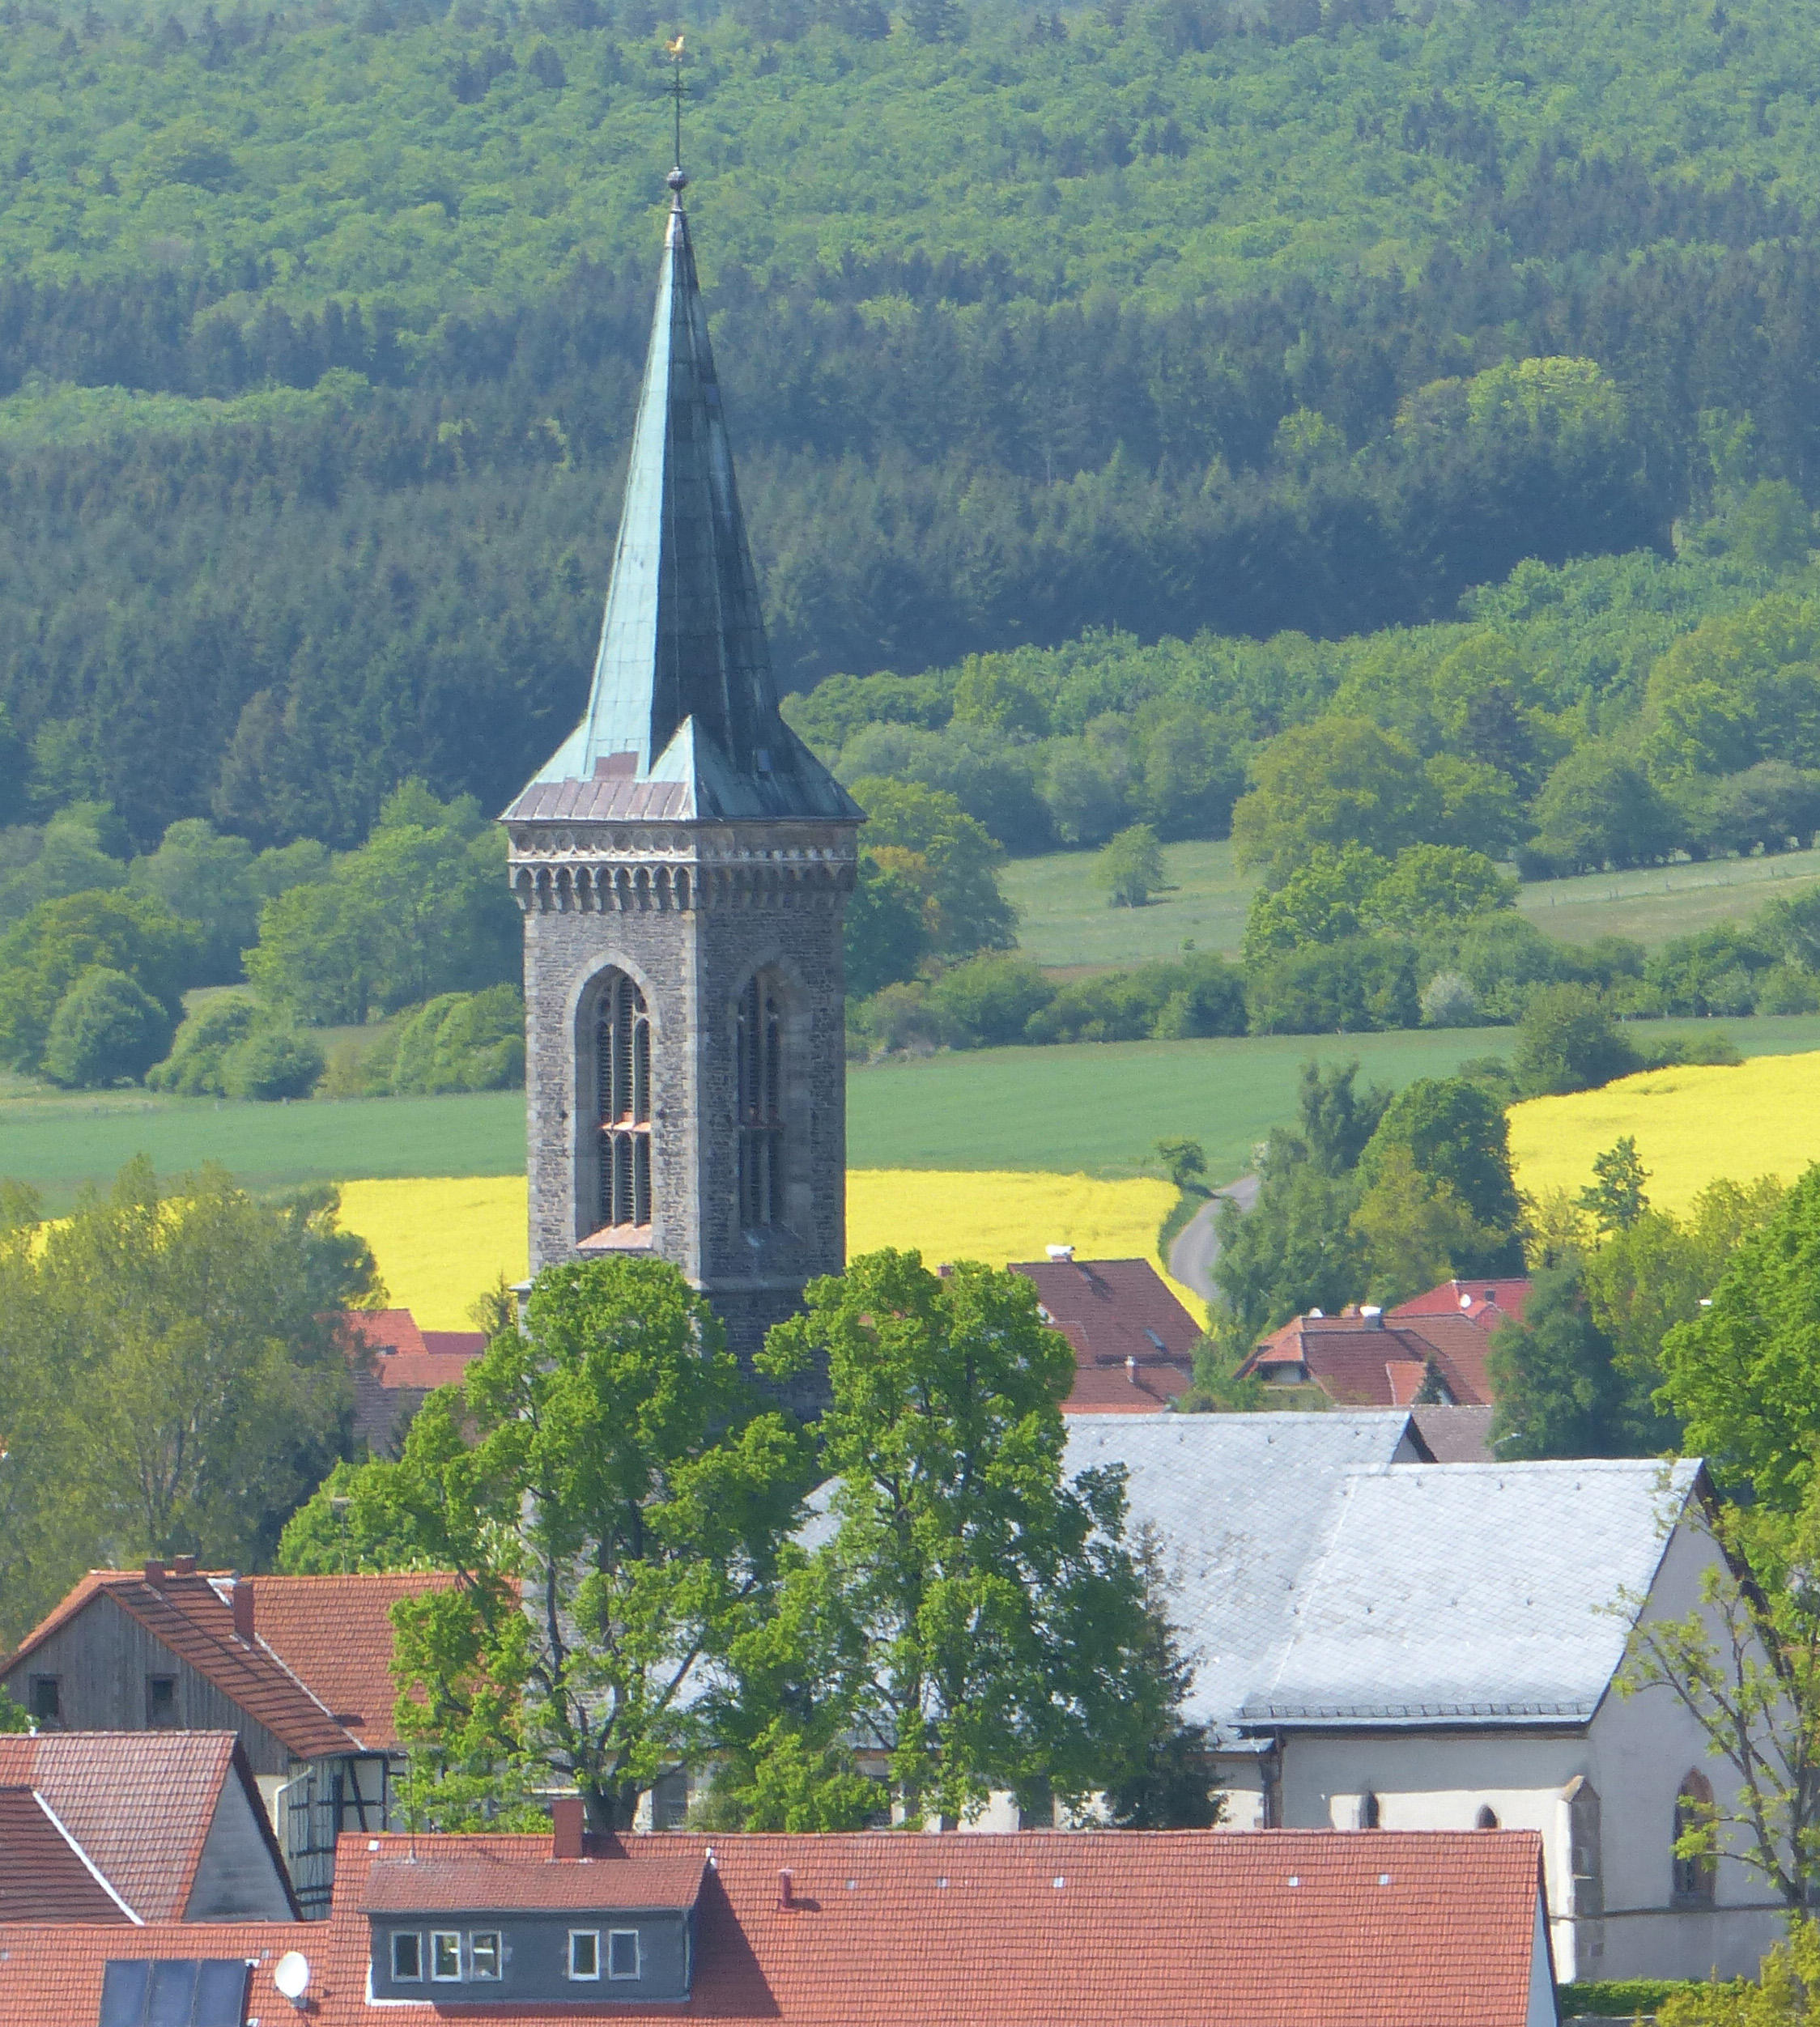 Bild 1 Evangelische Kirche Crainfeld - Evangelische Kirchengemeinde Crainfeld in Grebenhain